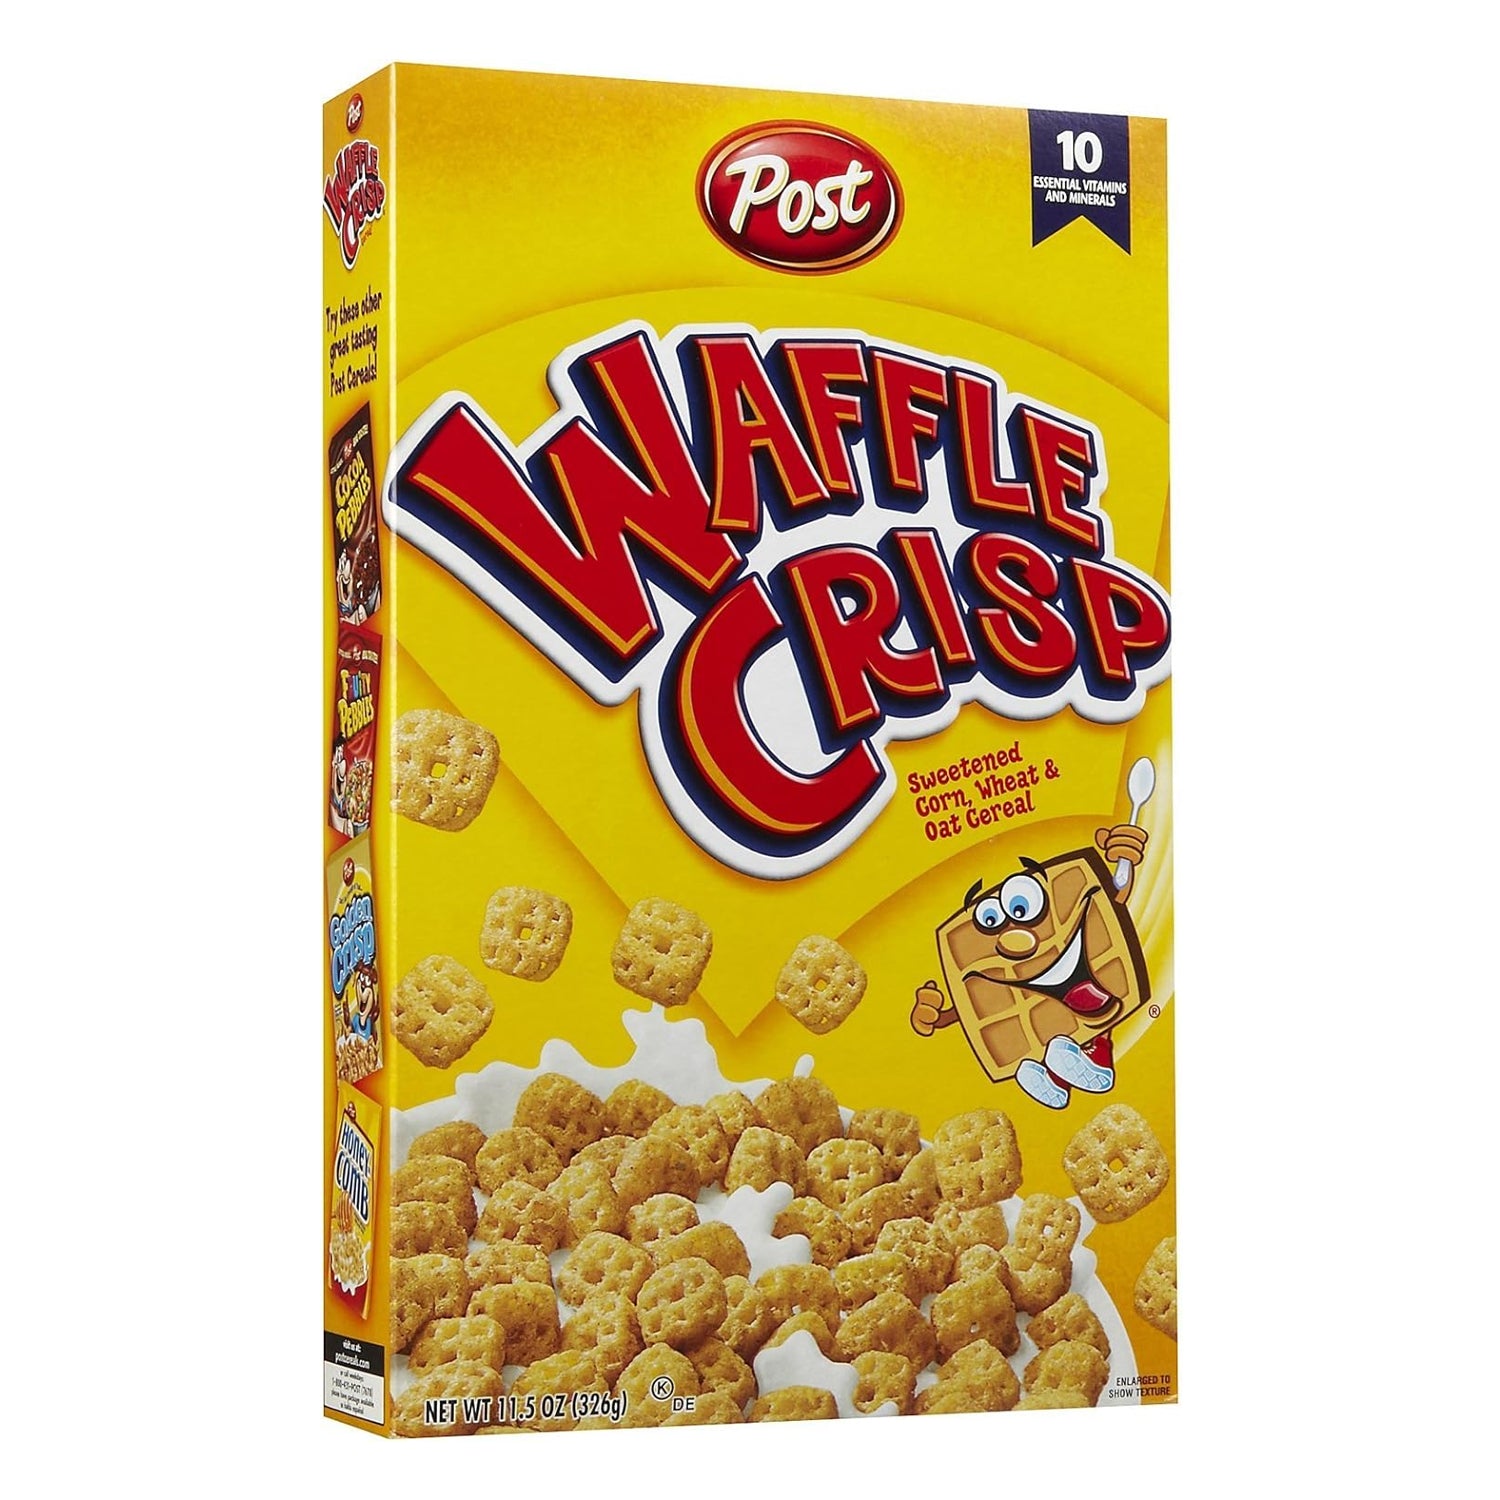 Post - Waffle Crisp Cereal - 11.5 oz (326 GM)